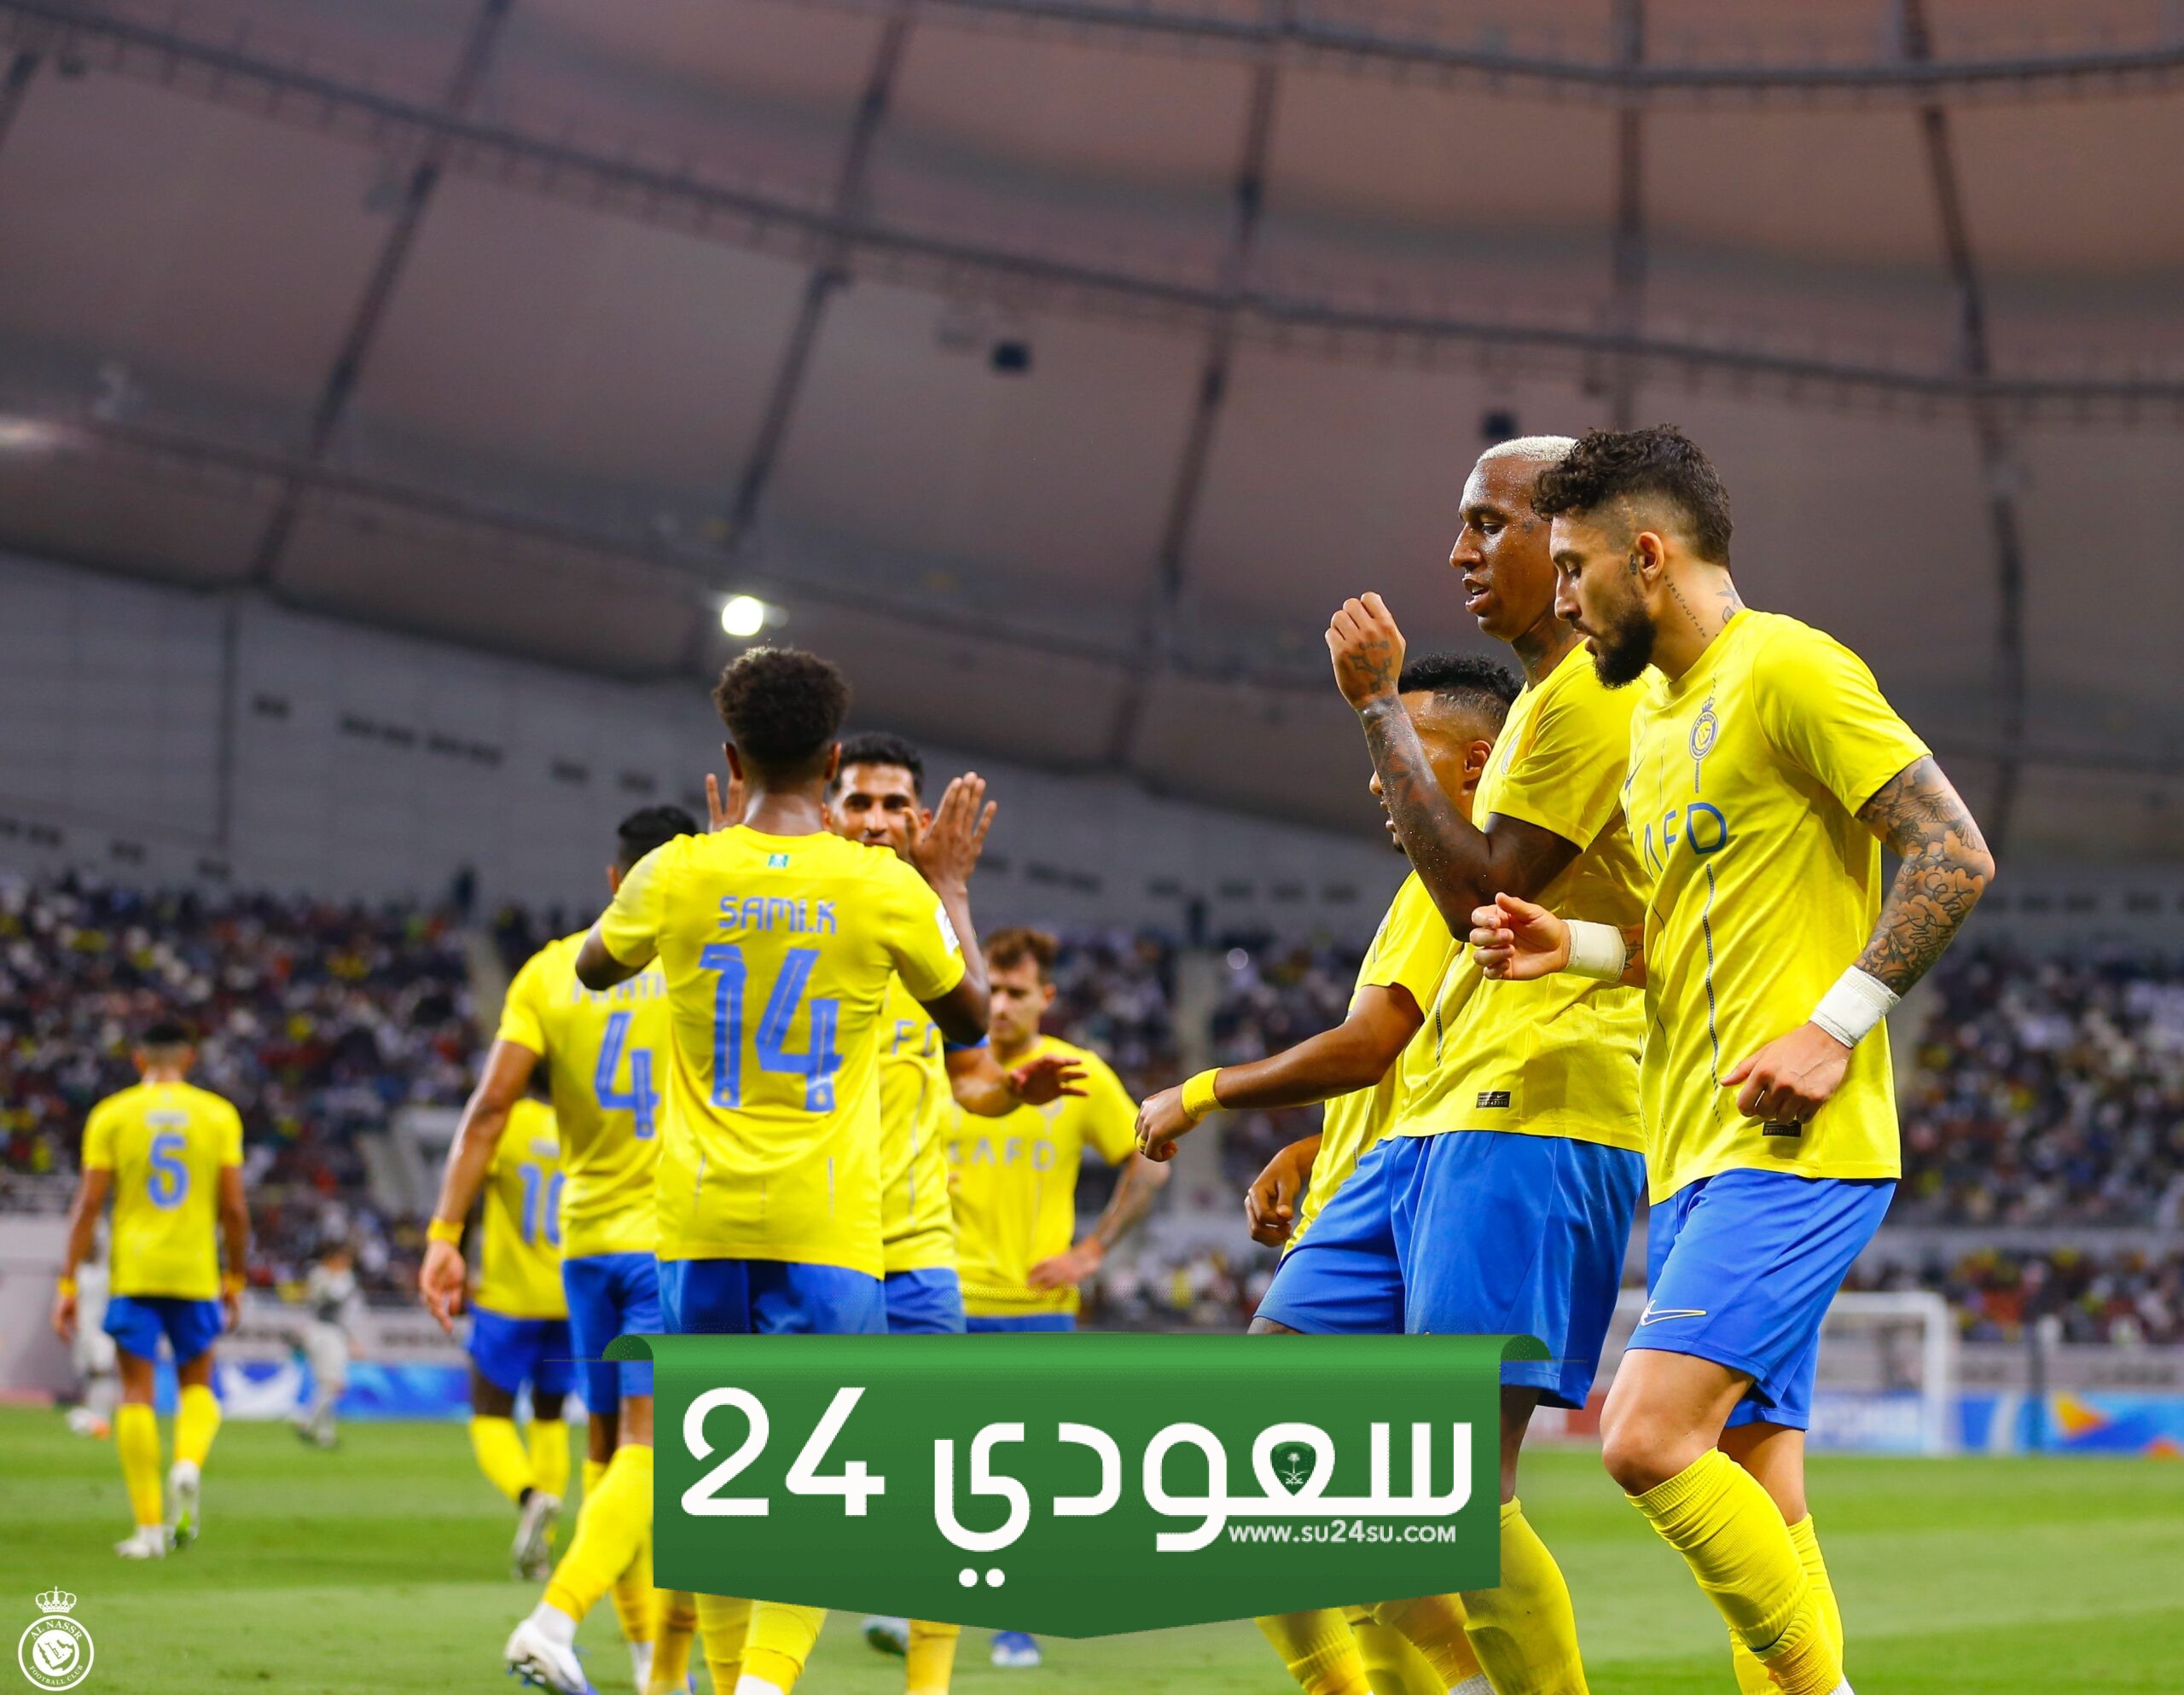 طريقة حجز تذاكر مباراة النصر والفيحاء في الدوري السعودي